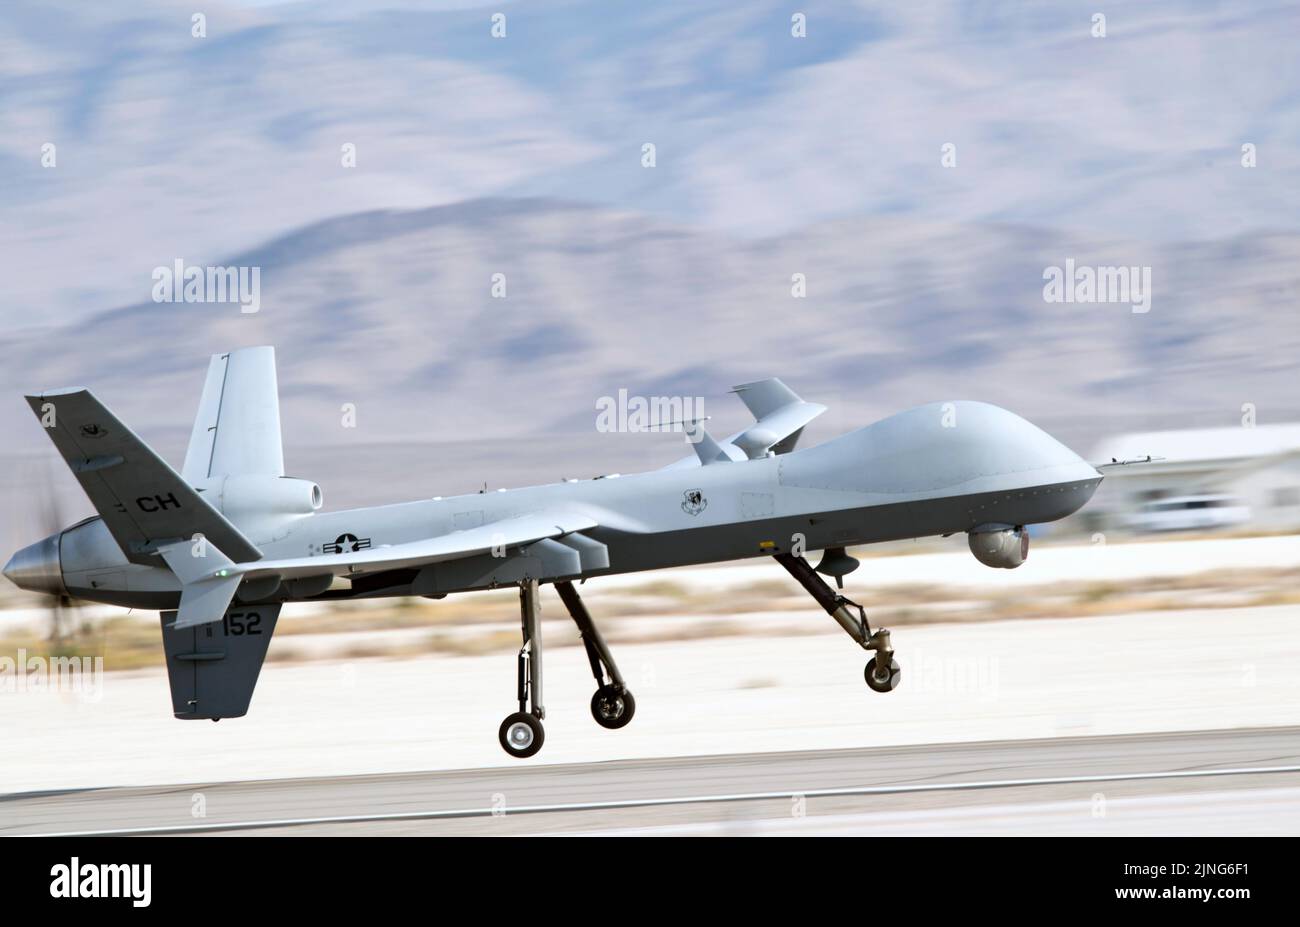 Un drone de la Fuerza Aérea de los EE.UU. MQ-9 Reaper asignado al 432nd Air Expeditionary Wing, despegará de la Base de la Fuerza Aérea de Creech, el 1 de septiembre de 2021 en Indian Springs, Nevada. Crédito: Planetpix/Alamy Live News Foto de stock